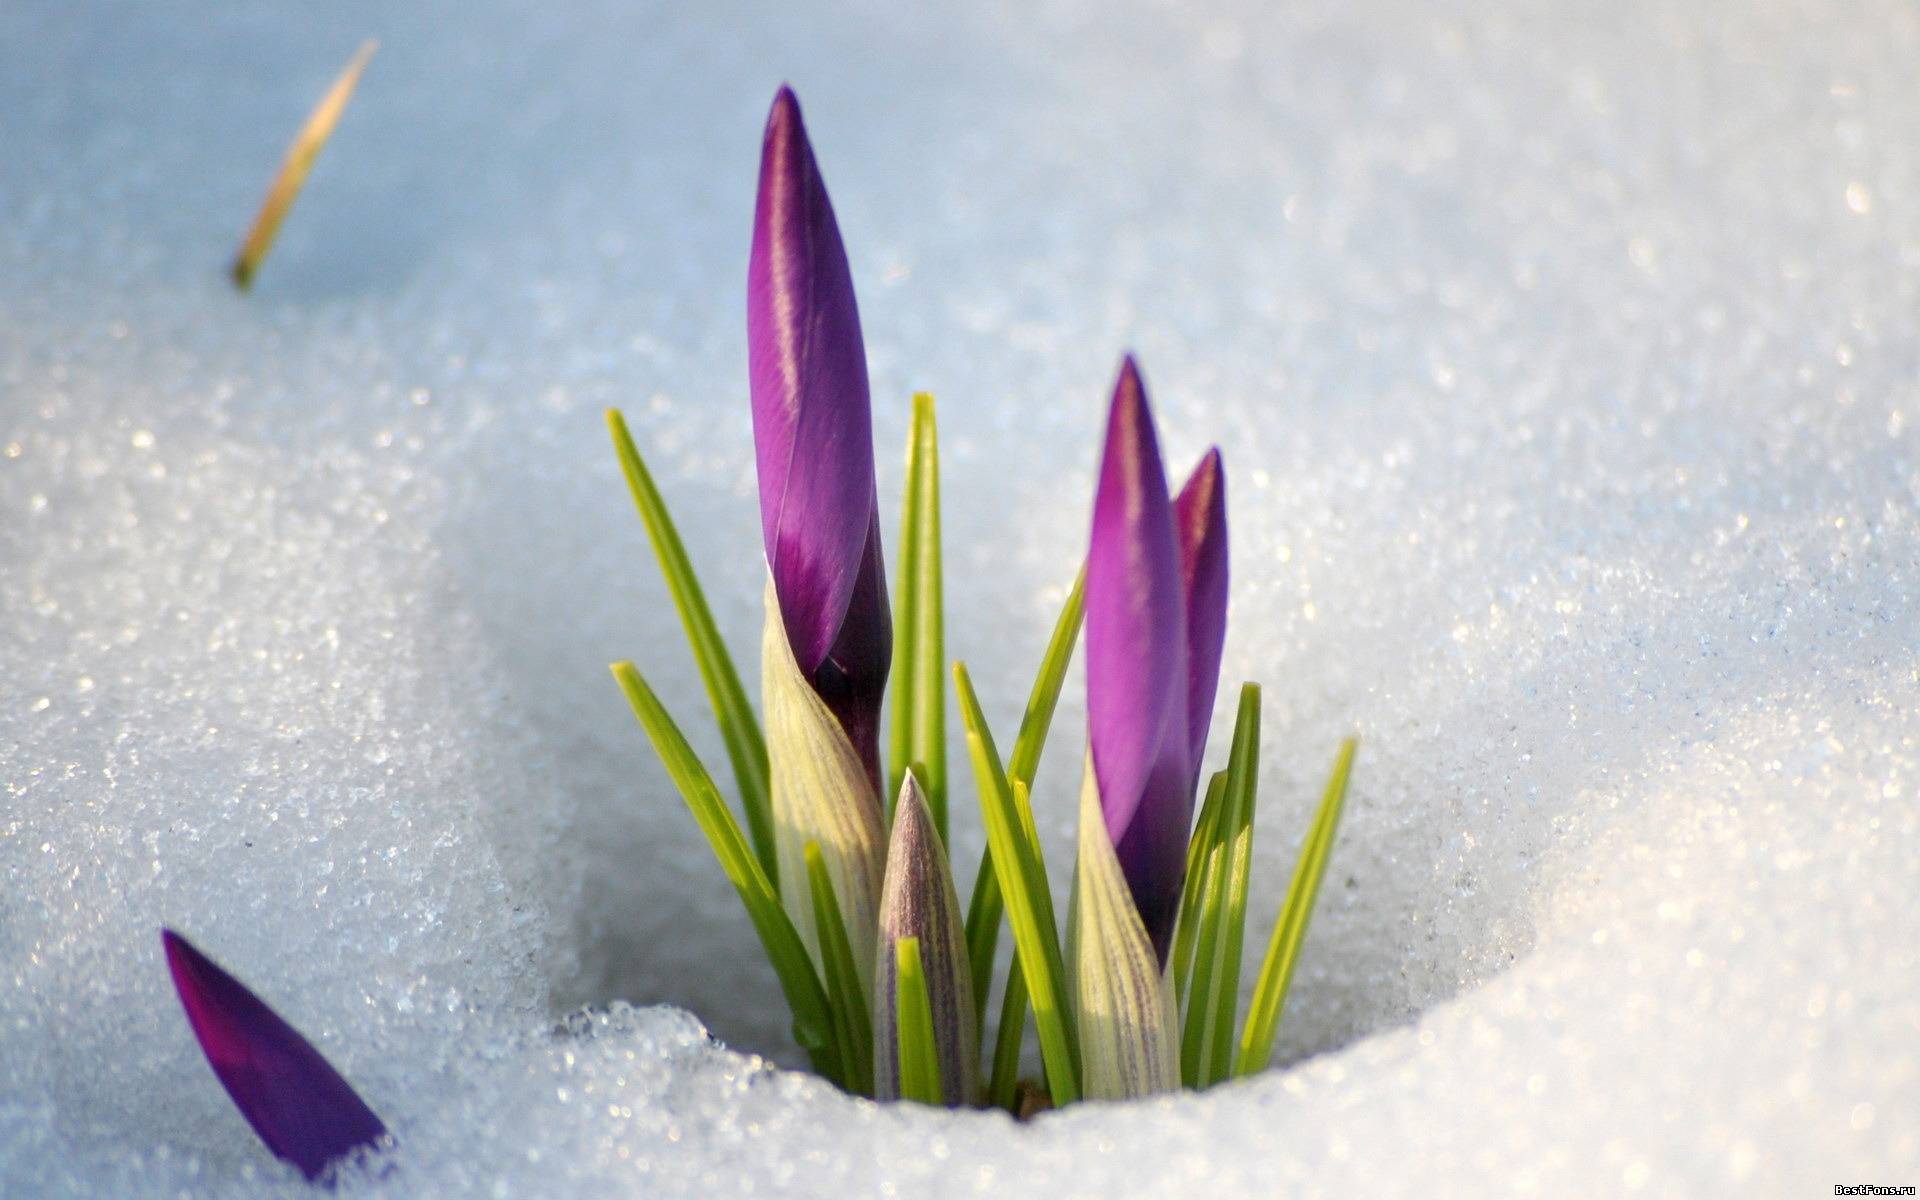 Descarga gratuita de fondo de pantalla para móvil de Plantas, Invierno, Nieve, Flores.